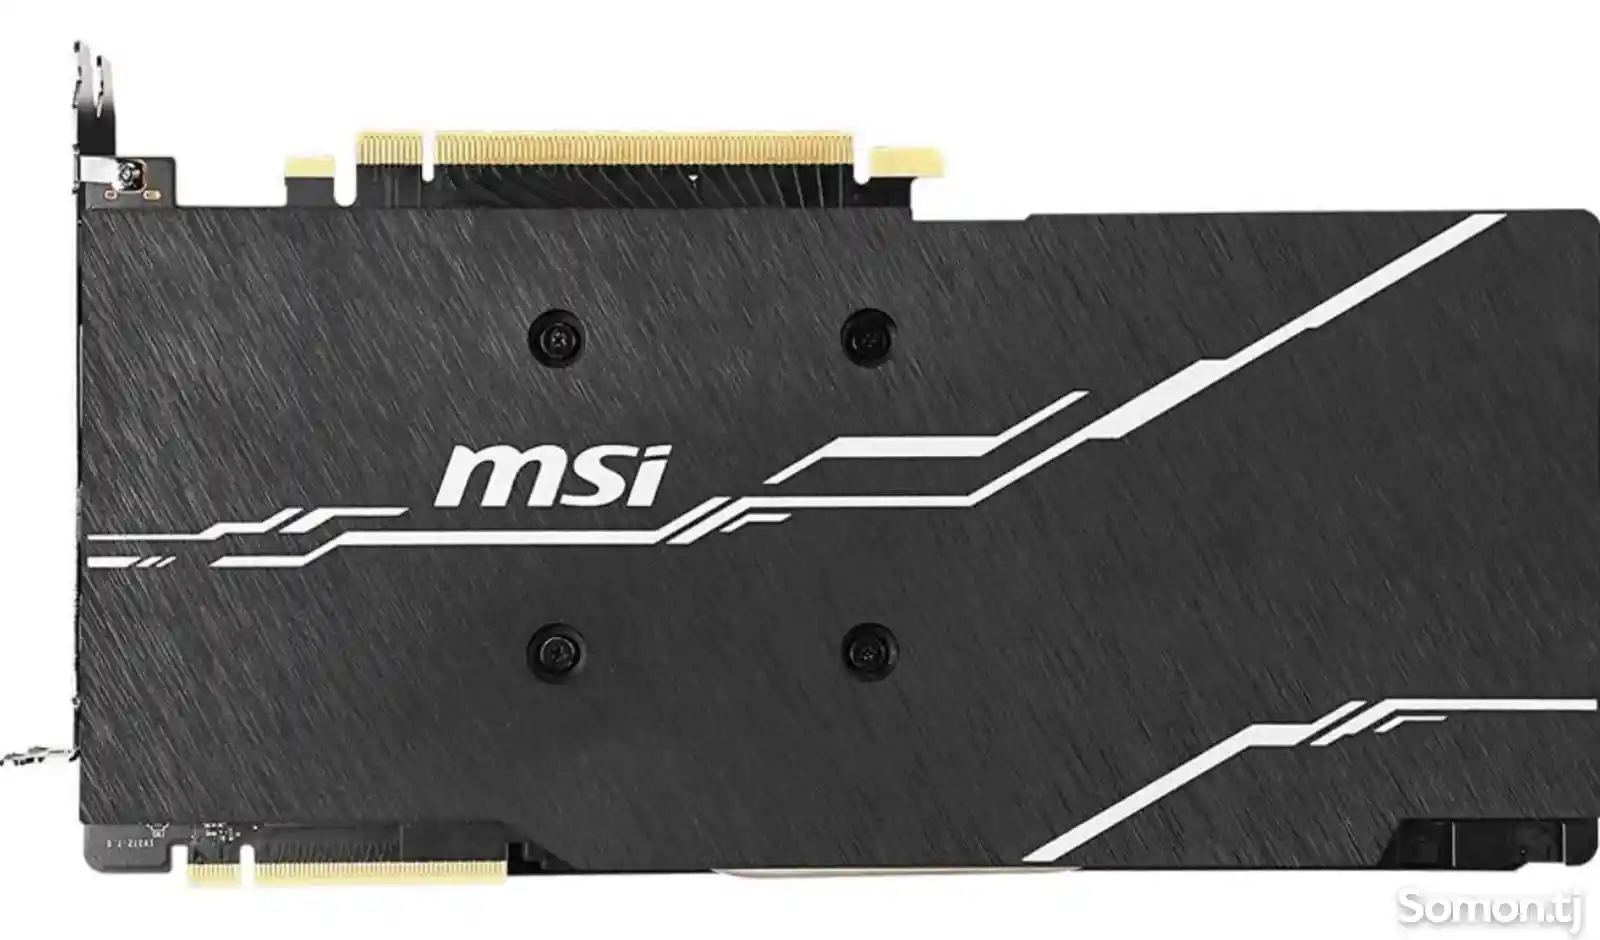 Видеокарта MSI Gaming GeForce RTX 2070 Super 8 ГБ GDRR6 256-битный-5